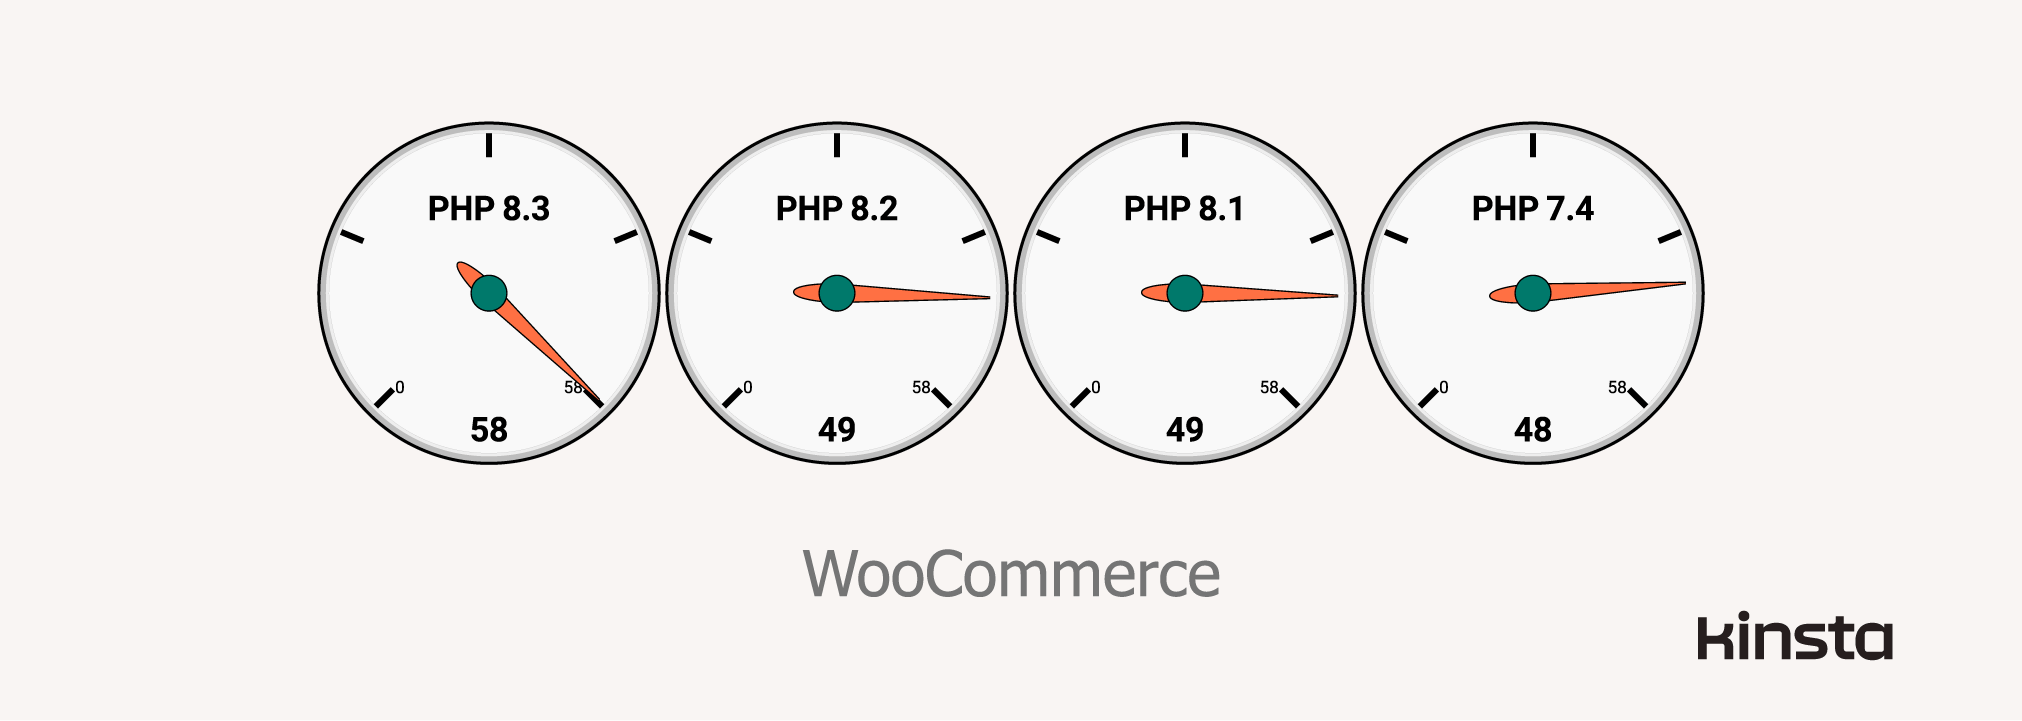 WooCommerce 7.9.0 Leistung auf WordPress 6.2.2, auf PHP 7.4, 8.1, 8.2 und 8.3 (in Anfragen/Sekunde)